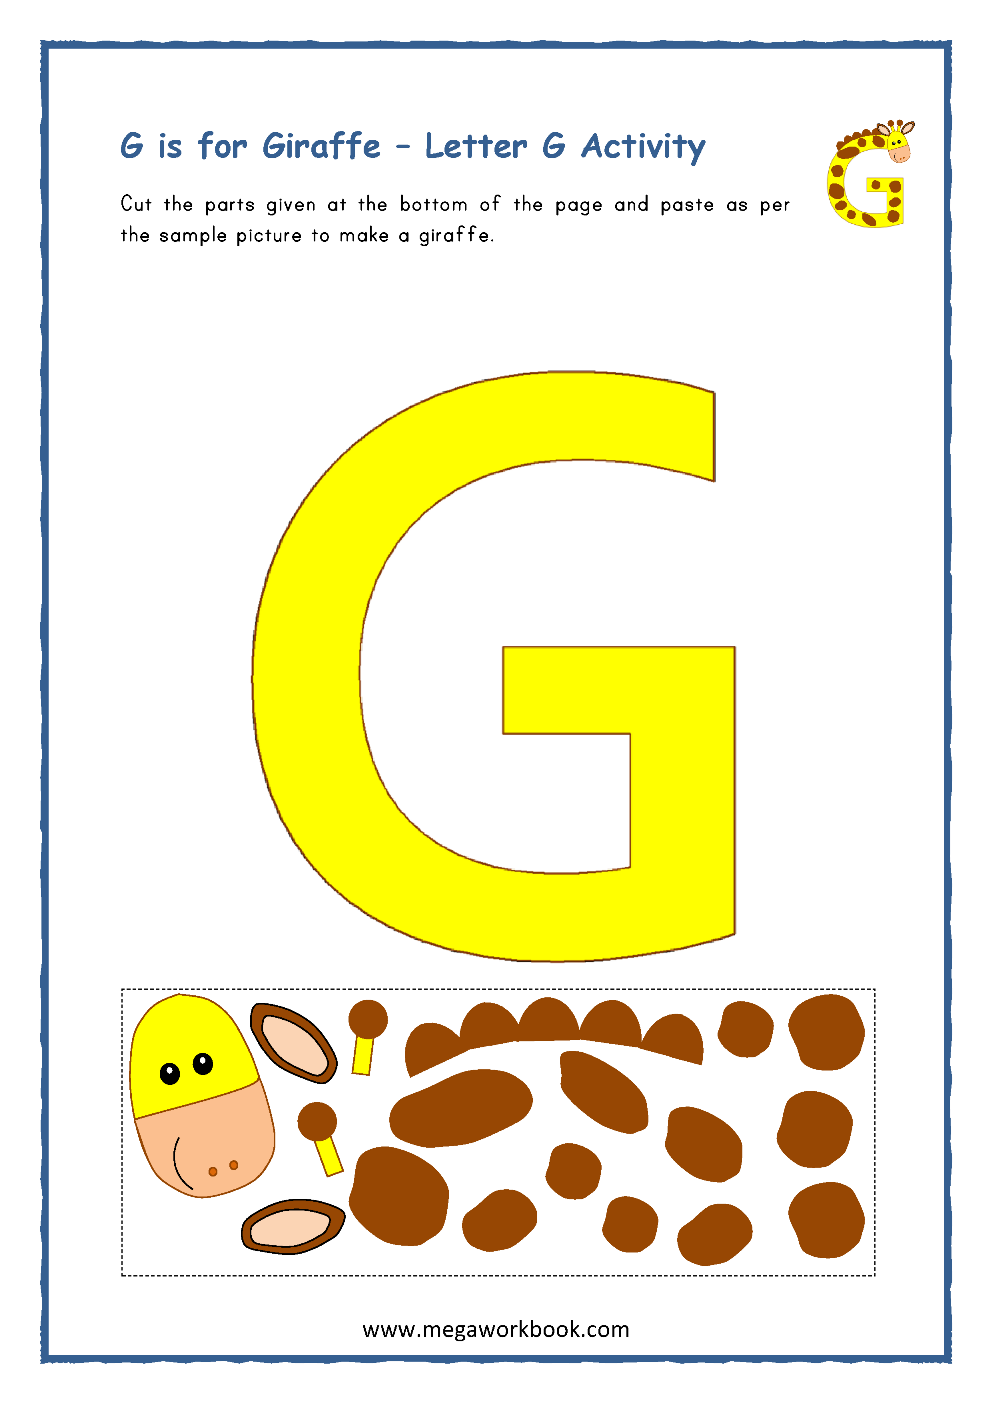 letter g activities letter g worksheets letter g crafts for preschoolers letter g printables megaworkbook